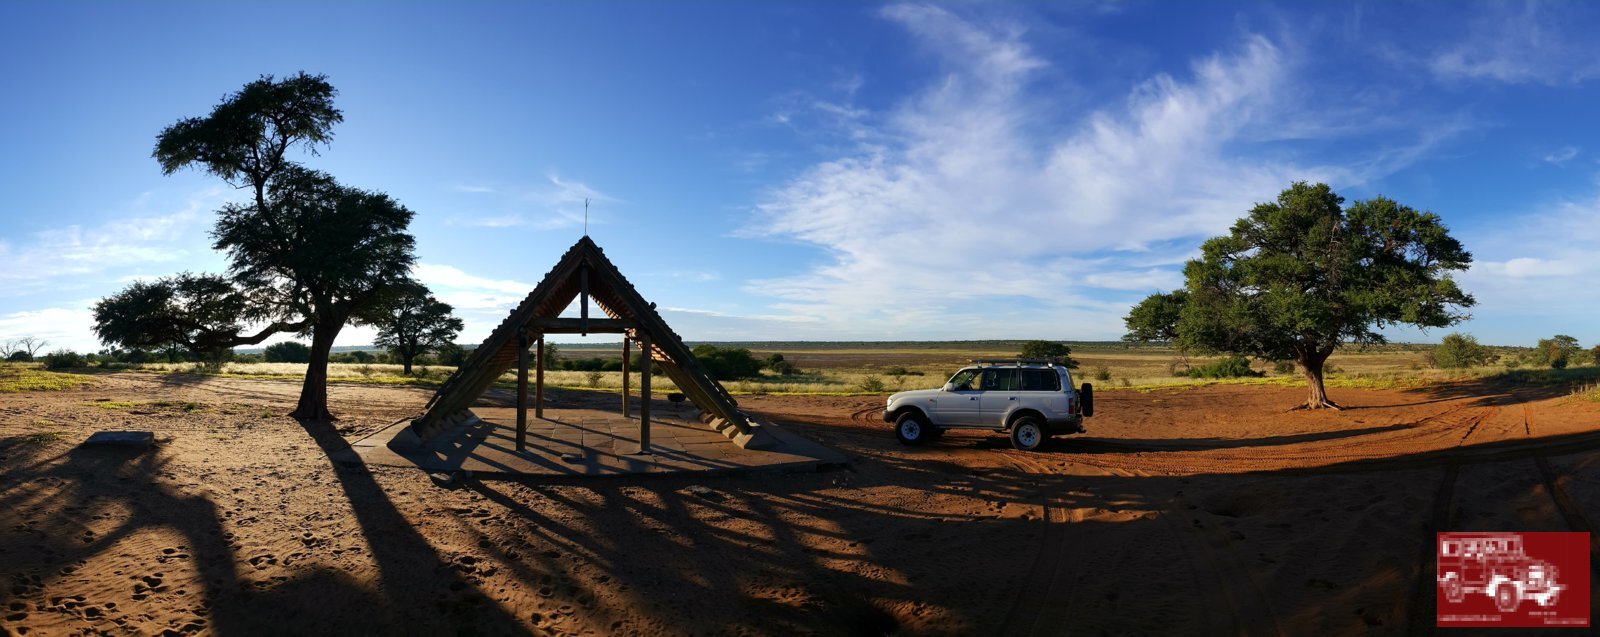 Mabuasehube, Botswana